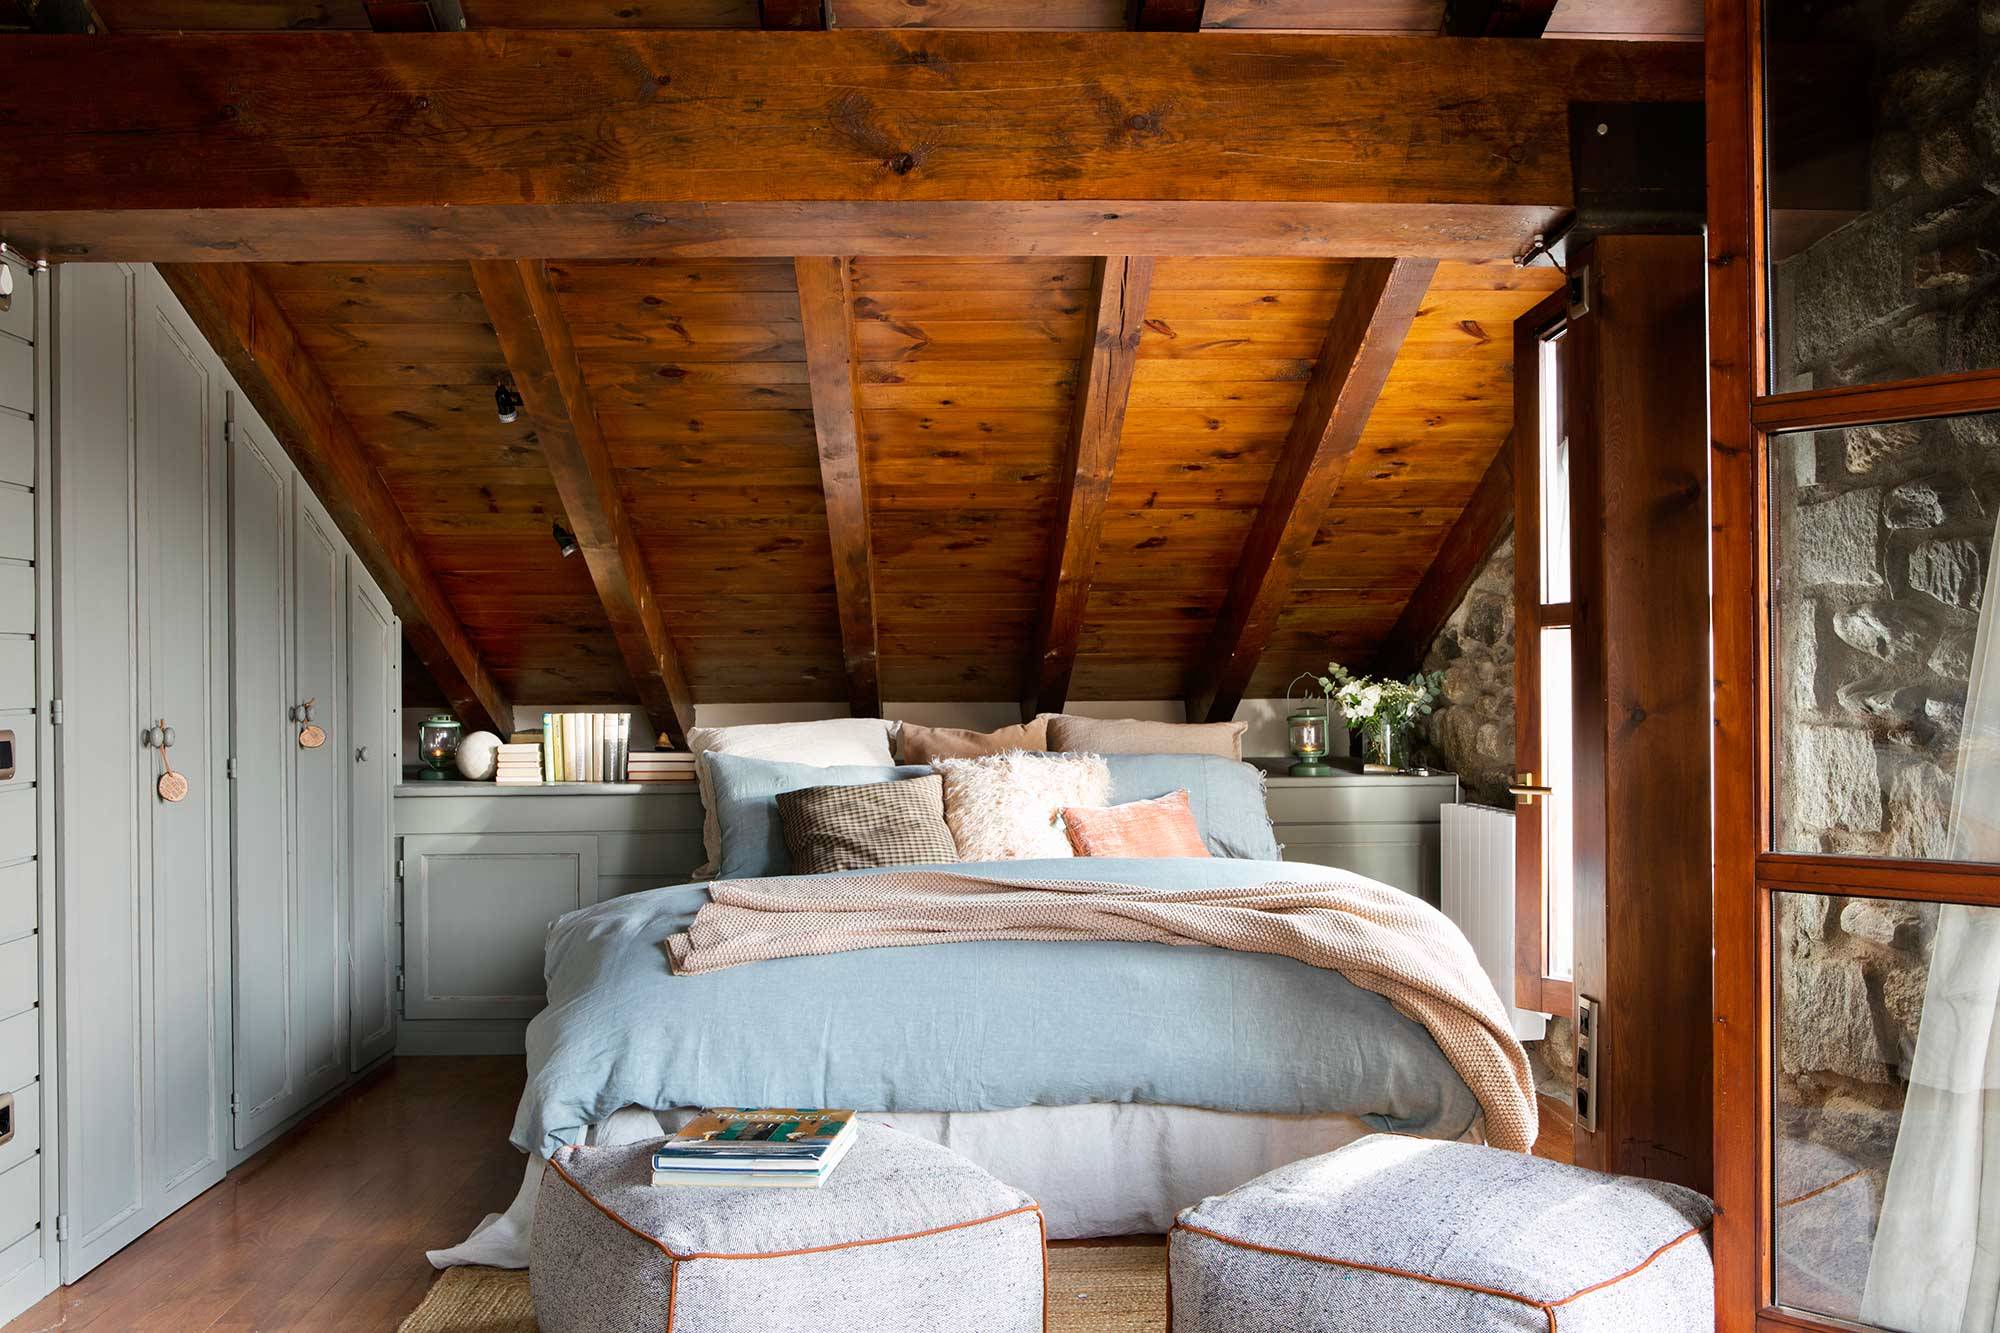 Dormitorio en buhardilla rústica revestida de madera y con puffs.